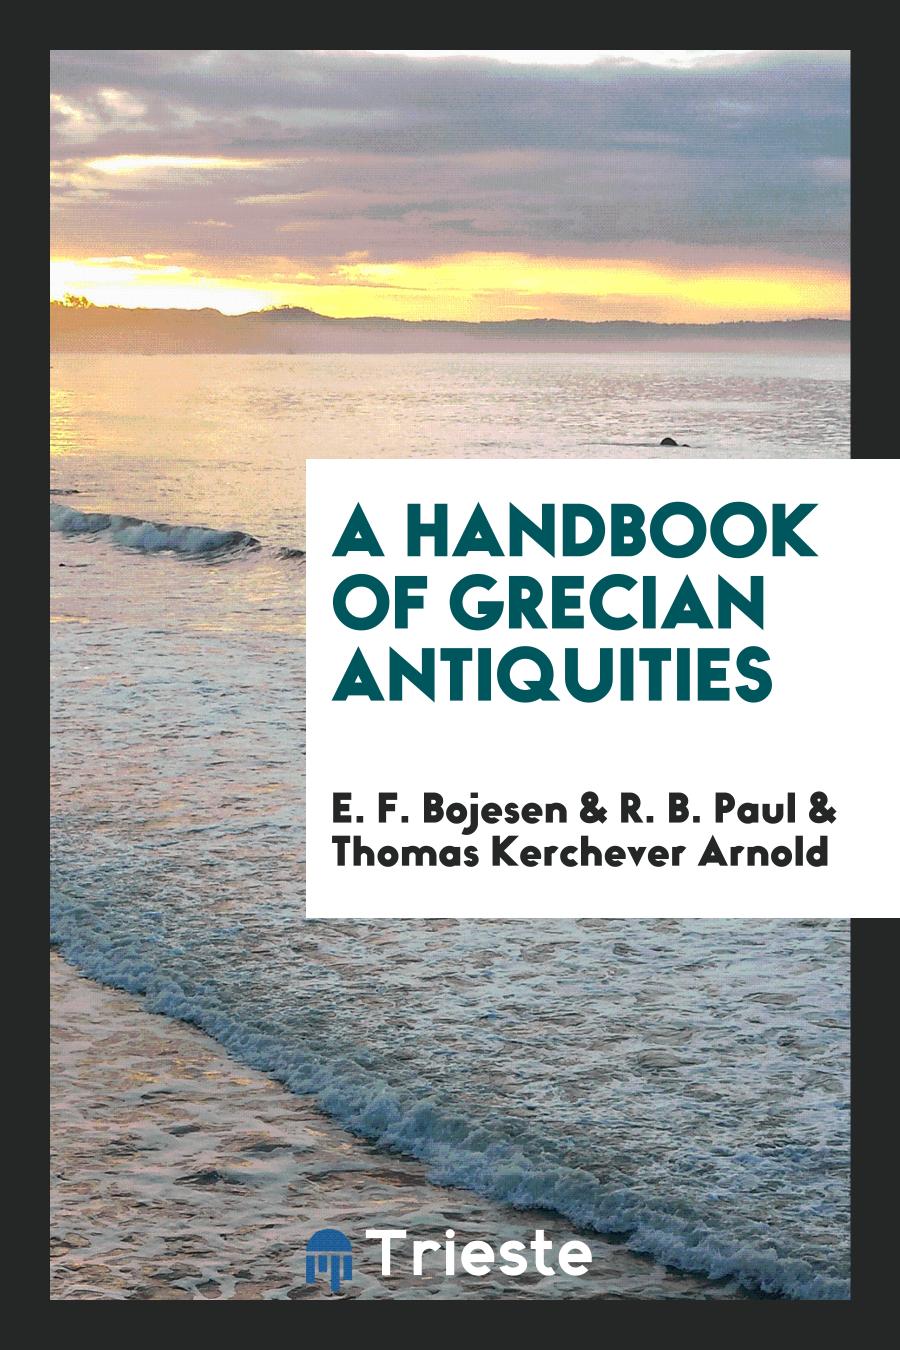 A Handbook of Grecian Antiquities